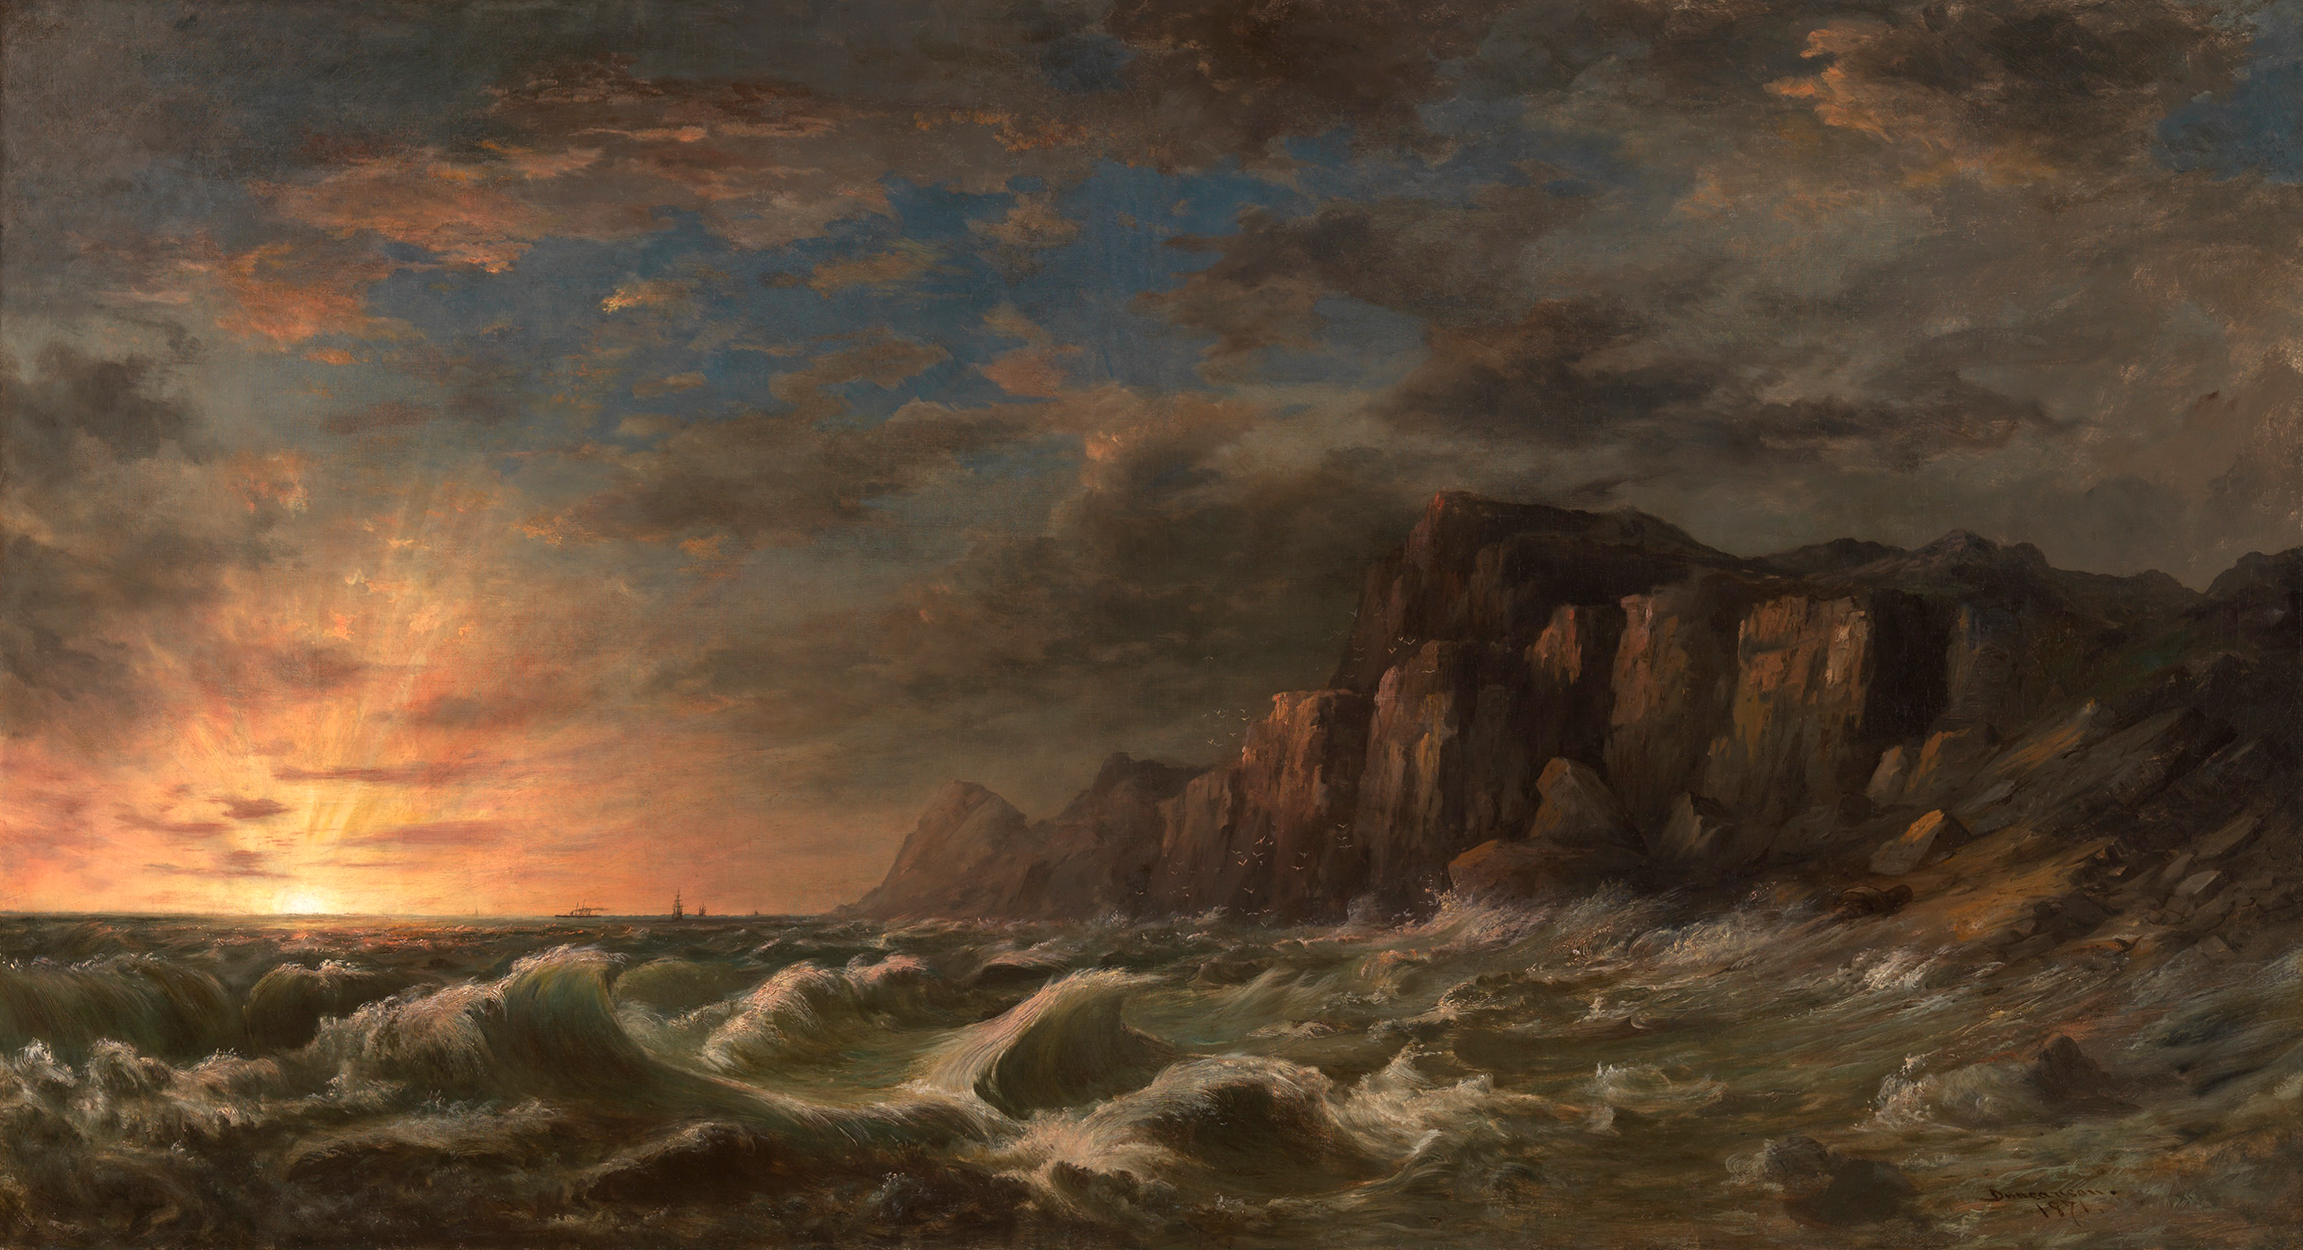 新英格兰海岸的日落 by 罗伯特 邓肯森 - 1871 - 92 x 169.5 cm 辛辛那提美术馆